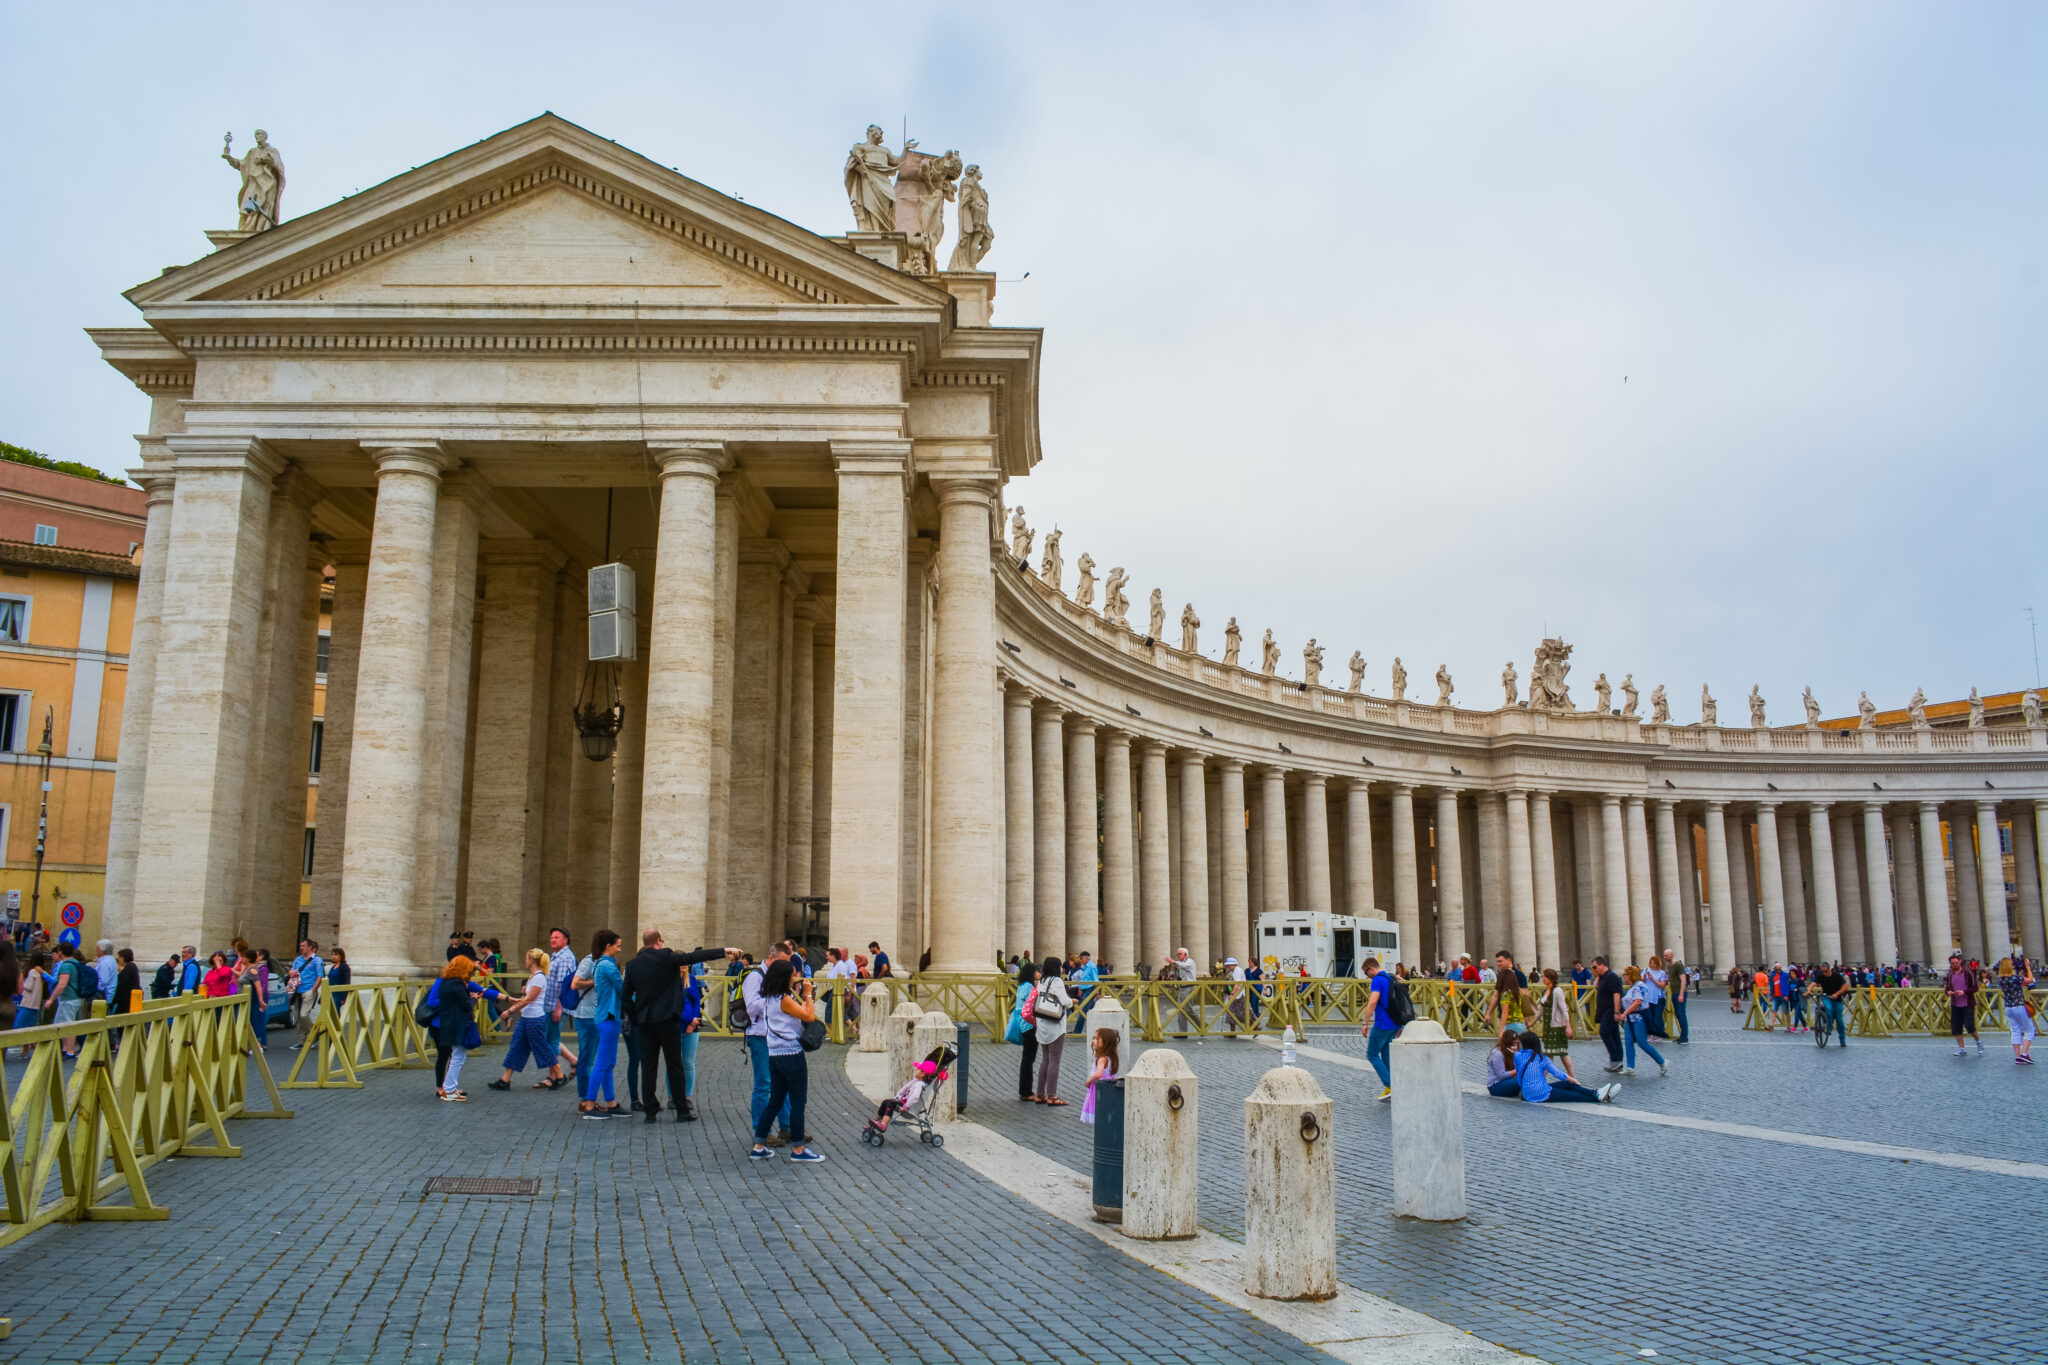 DSC 0116 2 scaled - Museus do Vaticano e Capela Sistina: Guia para visita